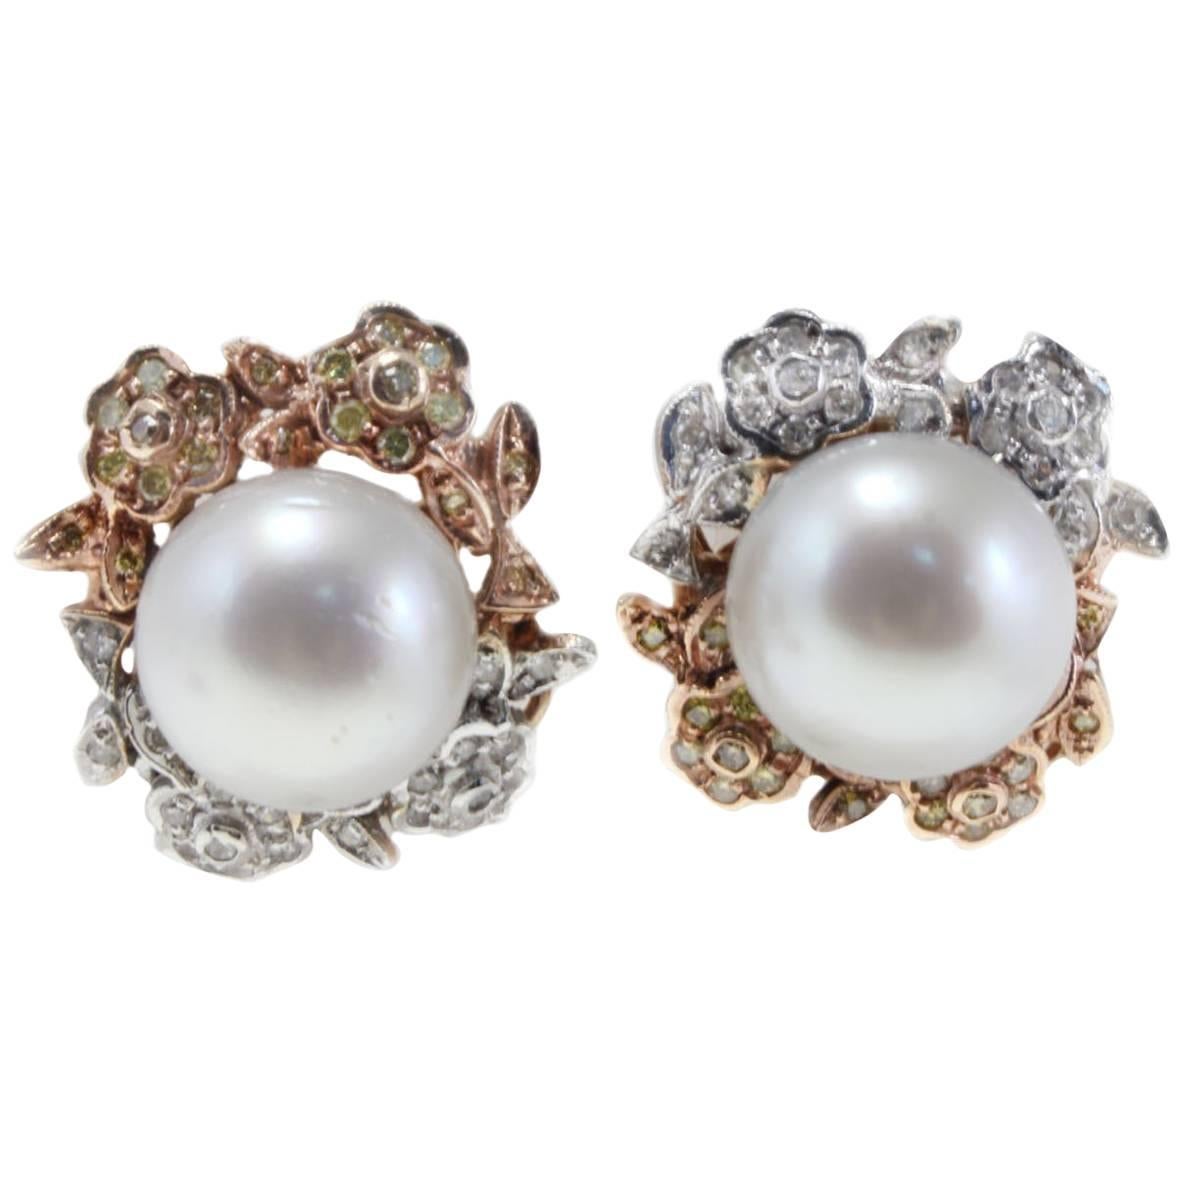 Luise Diamond and Fancy Diamond Australian Pearl Earrings